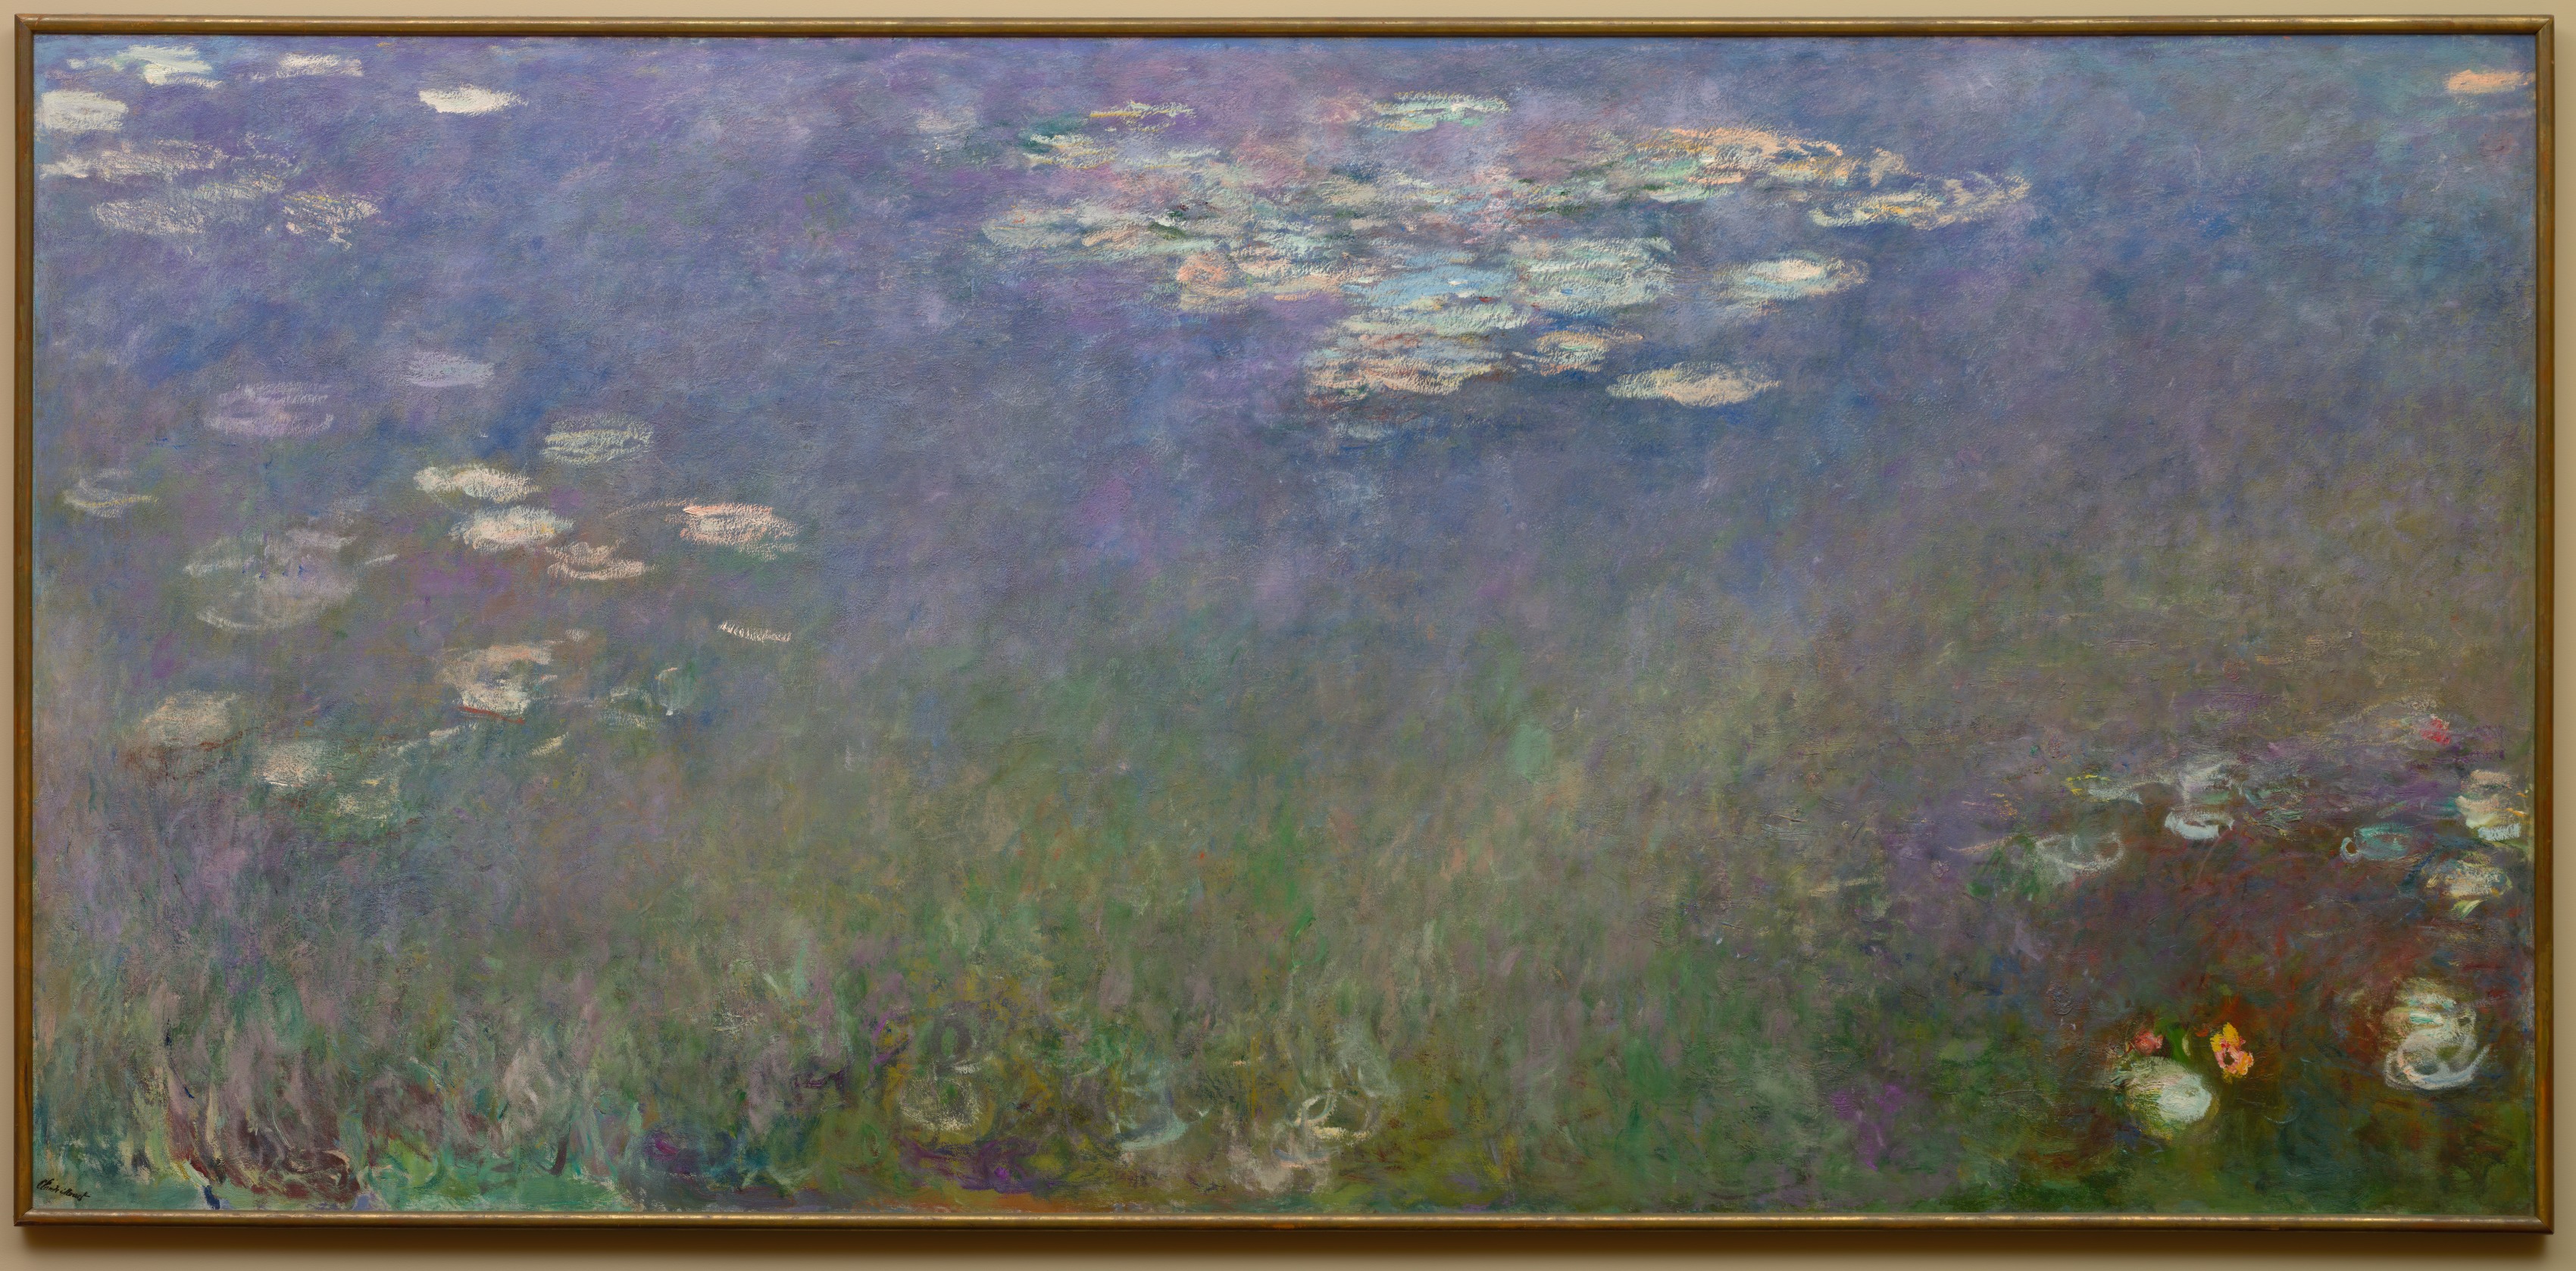 زنابق الماء (زهرة العشاق) by Claude Monet - حوالي 1915-1926 - 201.3 x 425.6 سم 